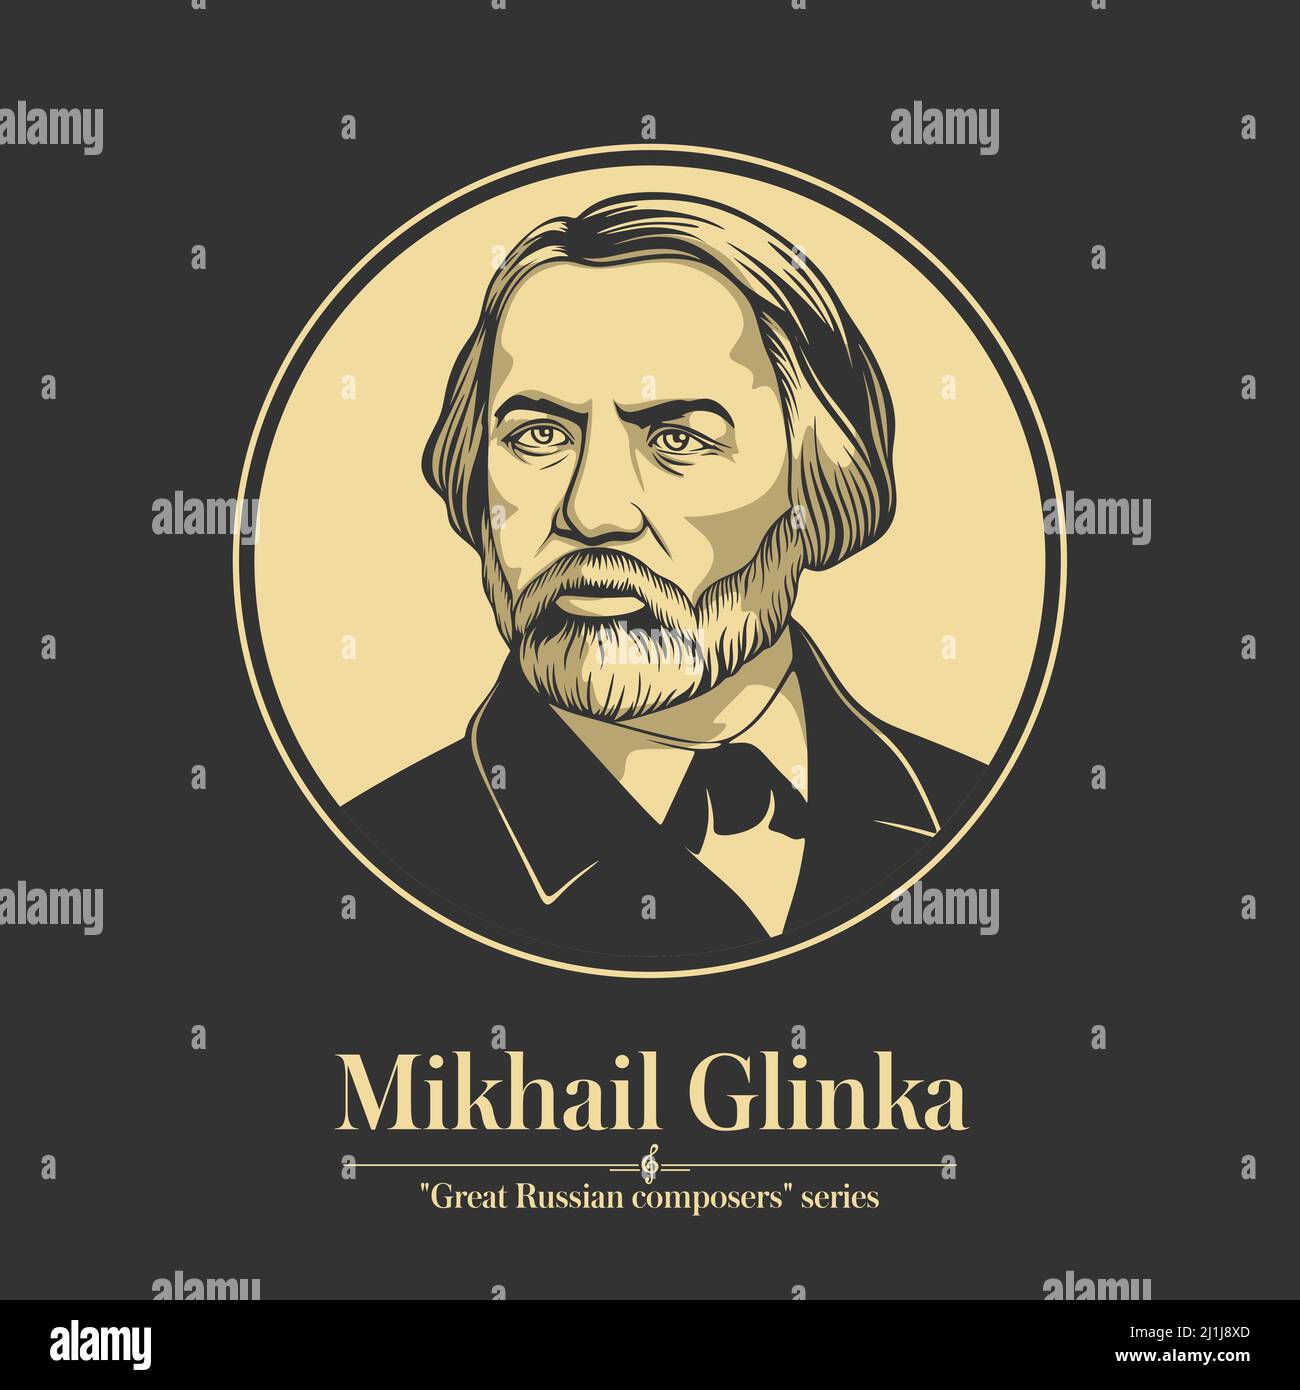 Grand compositeur russe. Mikhail Glinka a été le premier compositeur russe à obtenir une large reconnaissance dans son propre pays et est souvent considéré Illustration de Vecteur